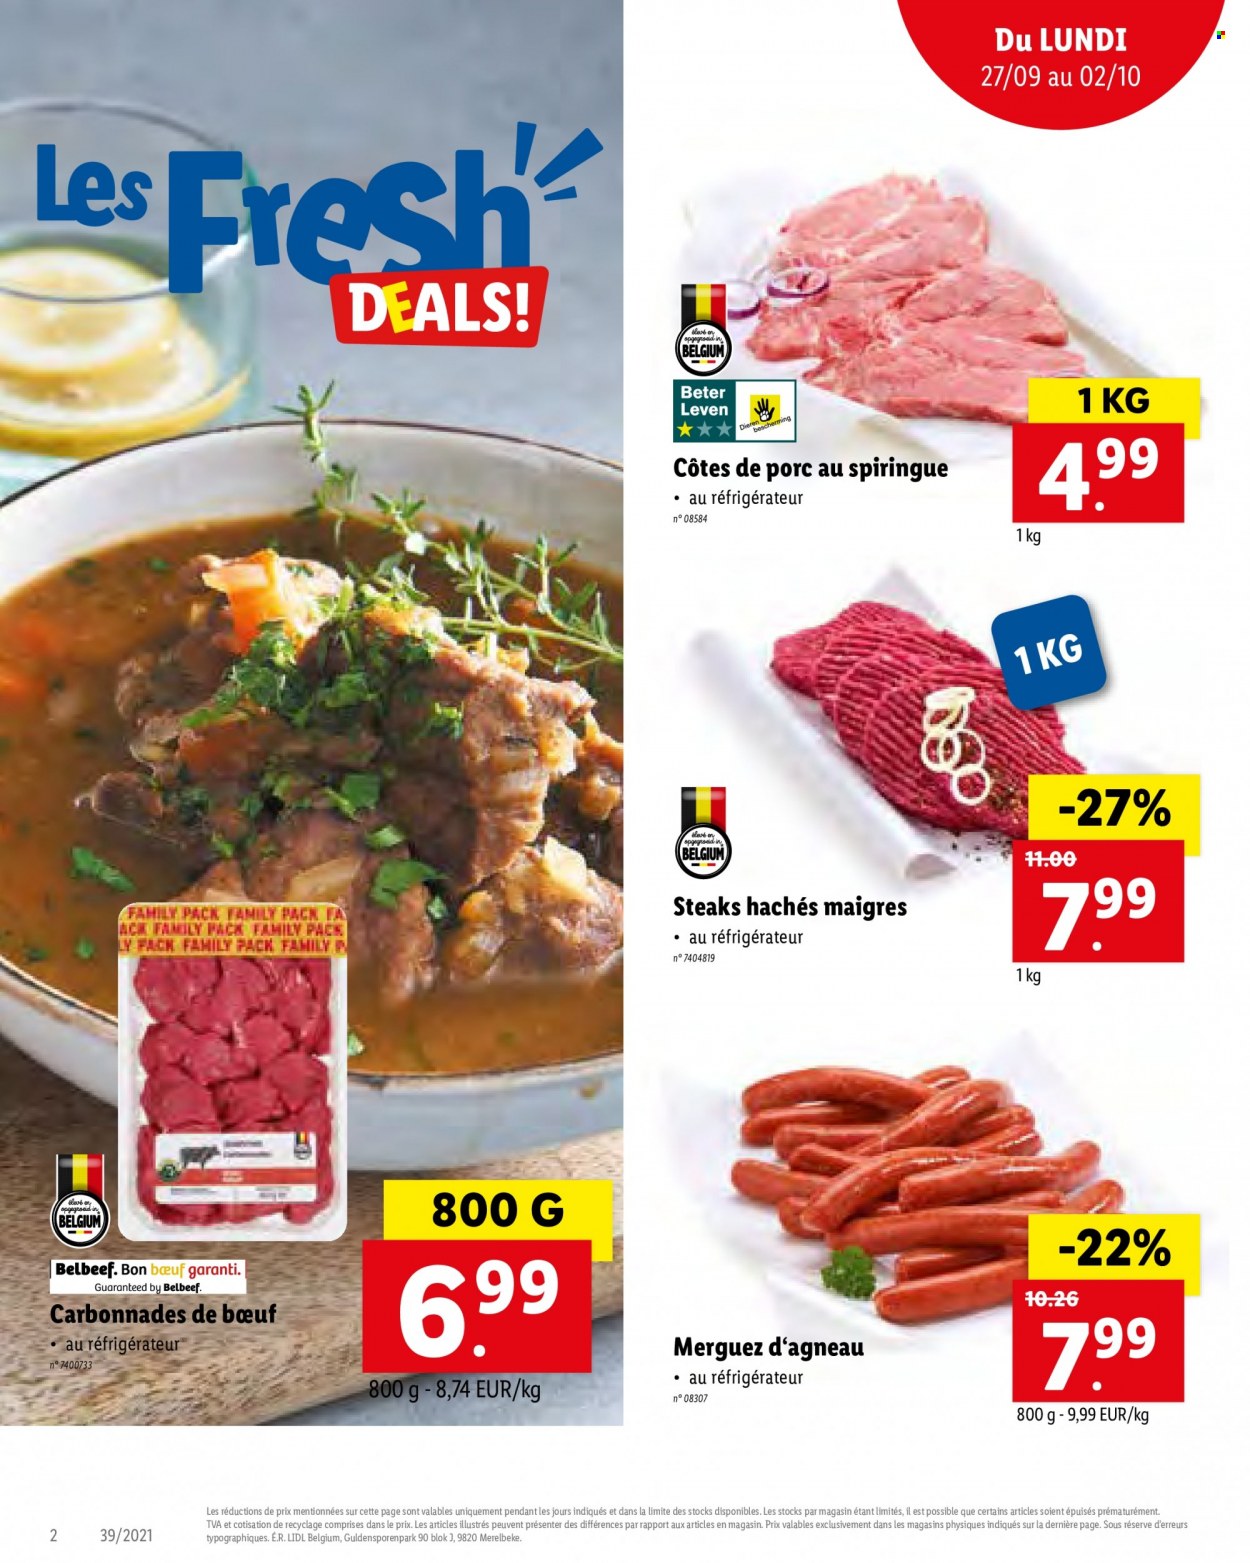 thumbnail - Catalogue Lidl - 27/09/2021 - 02/10/2021 - Produits soldés - côtes de porc, viande de porc, steak haché, viande hachée, merguez. Page 2.